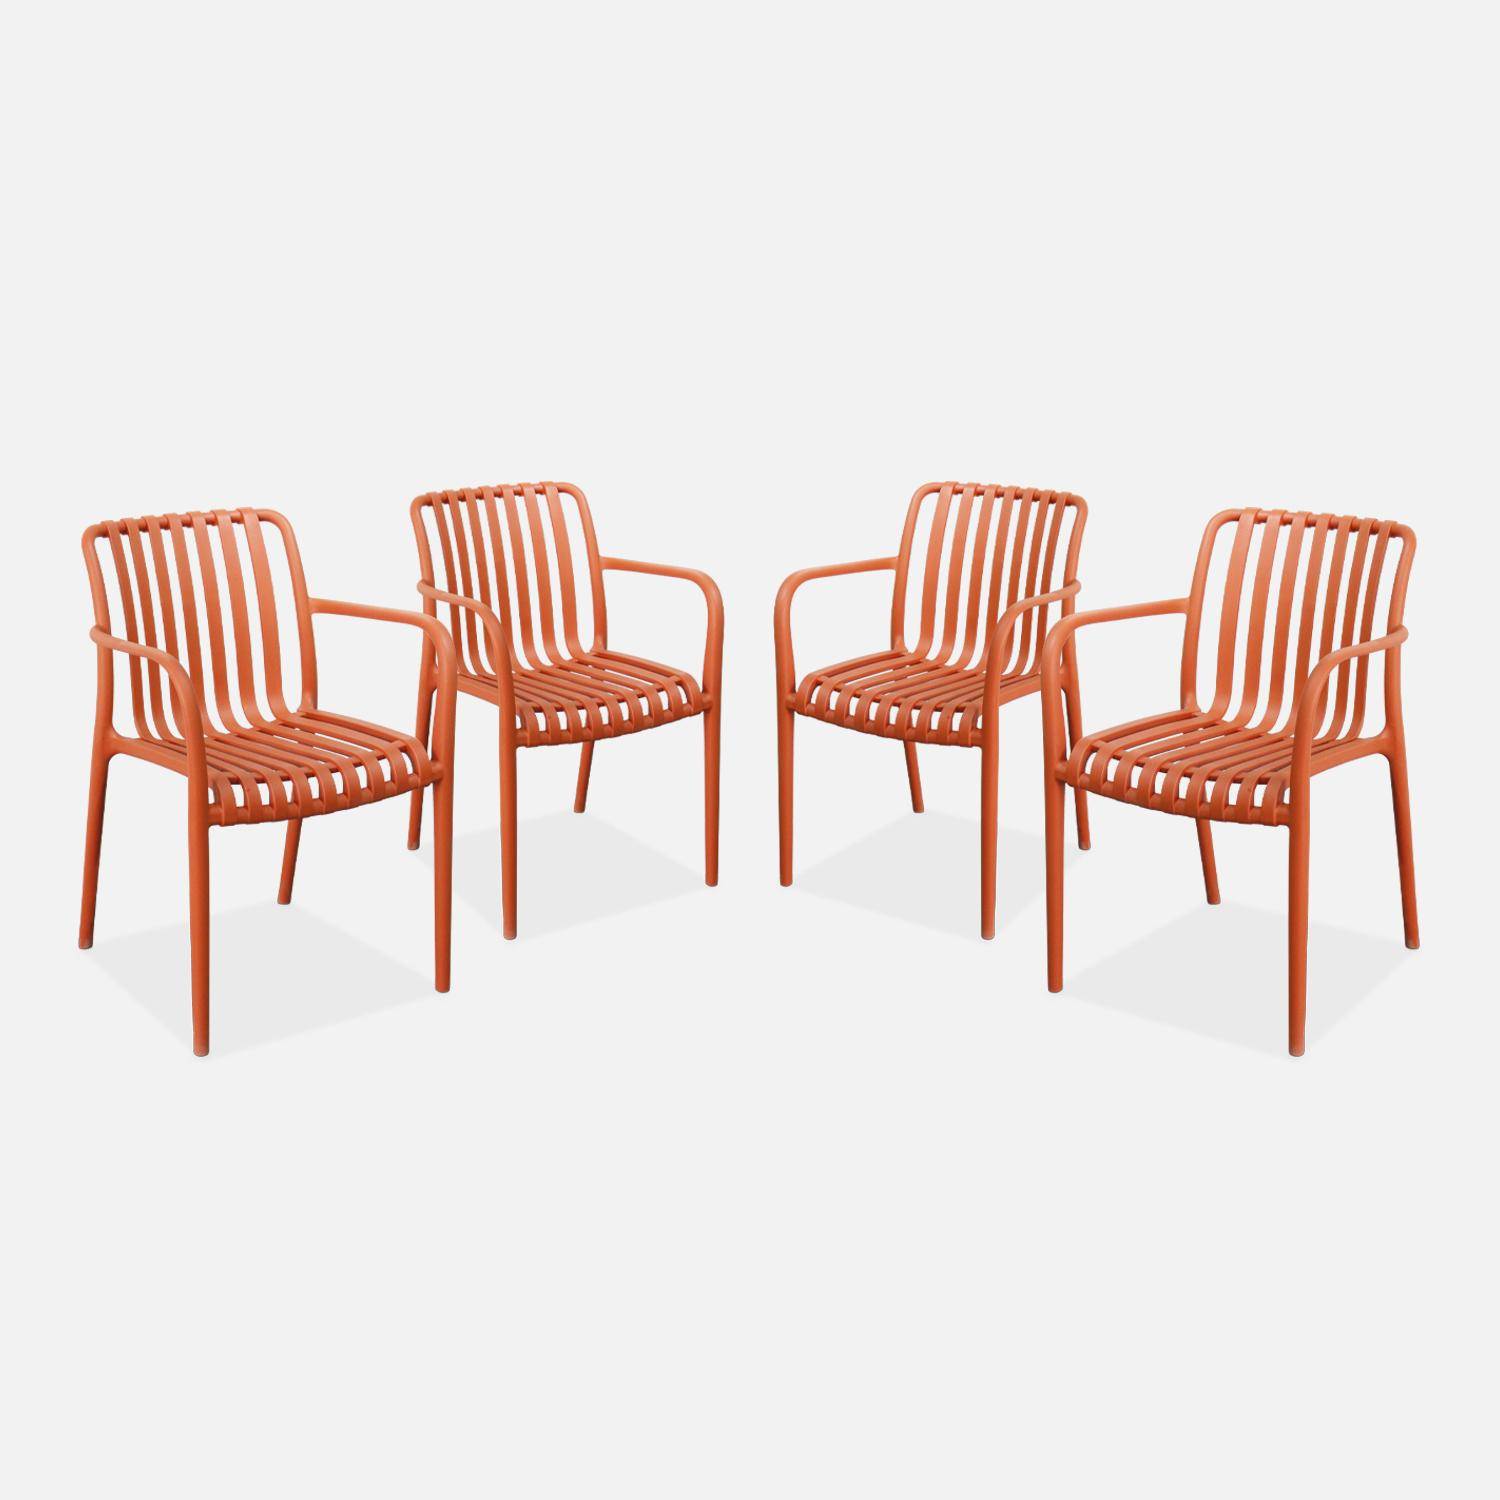 Lot de 4 fauteuils de jardin en plastique terracotta, empilables, design linéaire  Photo1